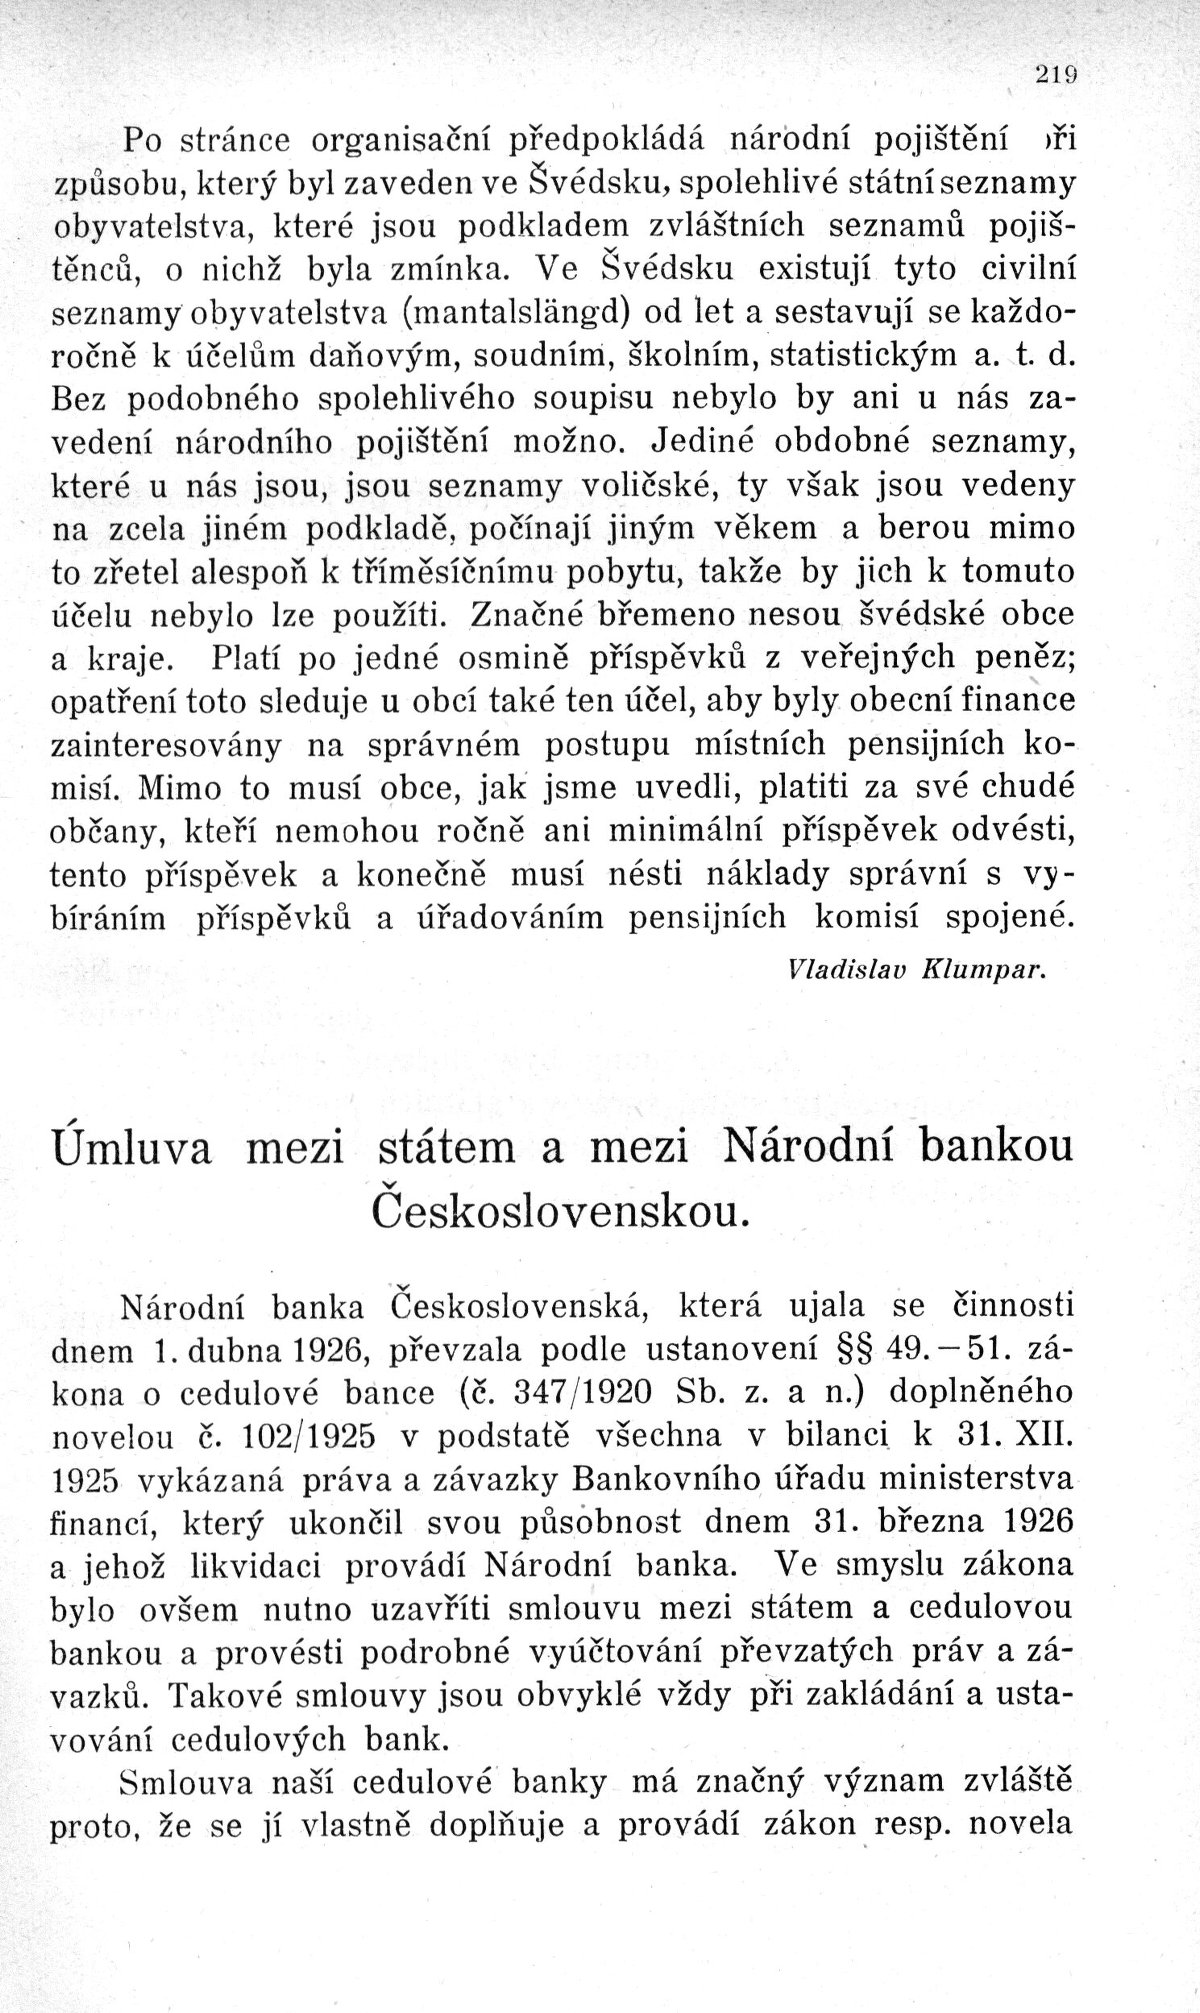 Úmluva mezi státem a mezi národní bankou Československou